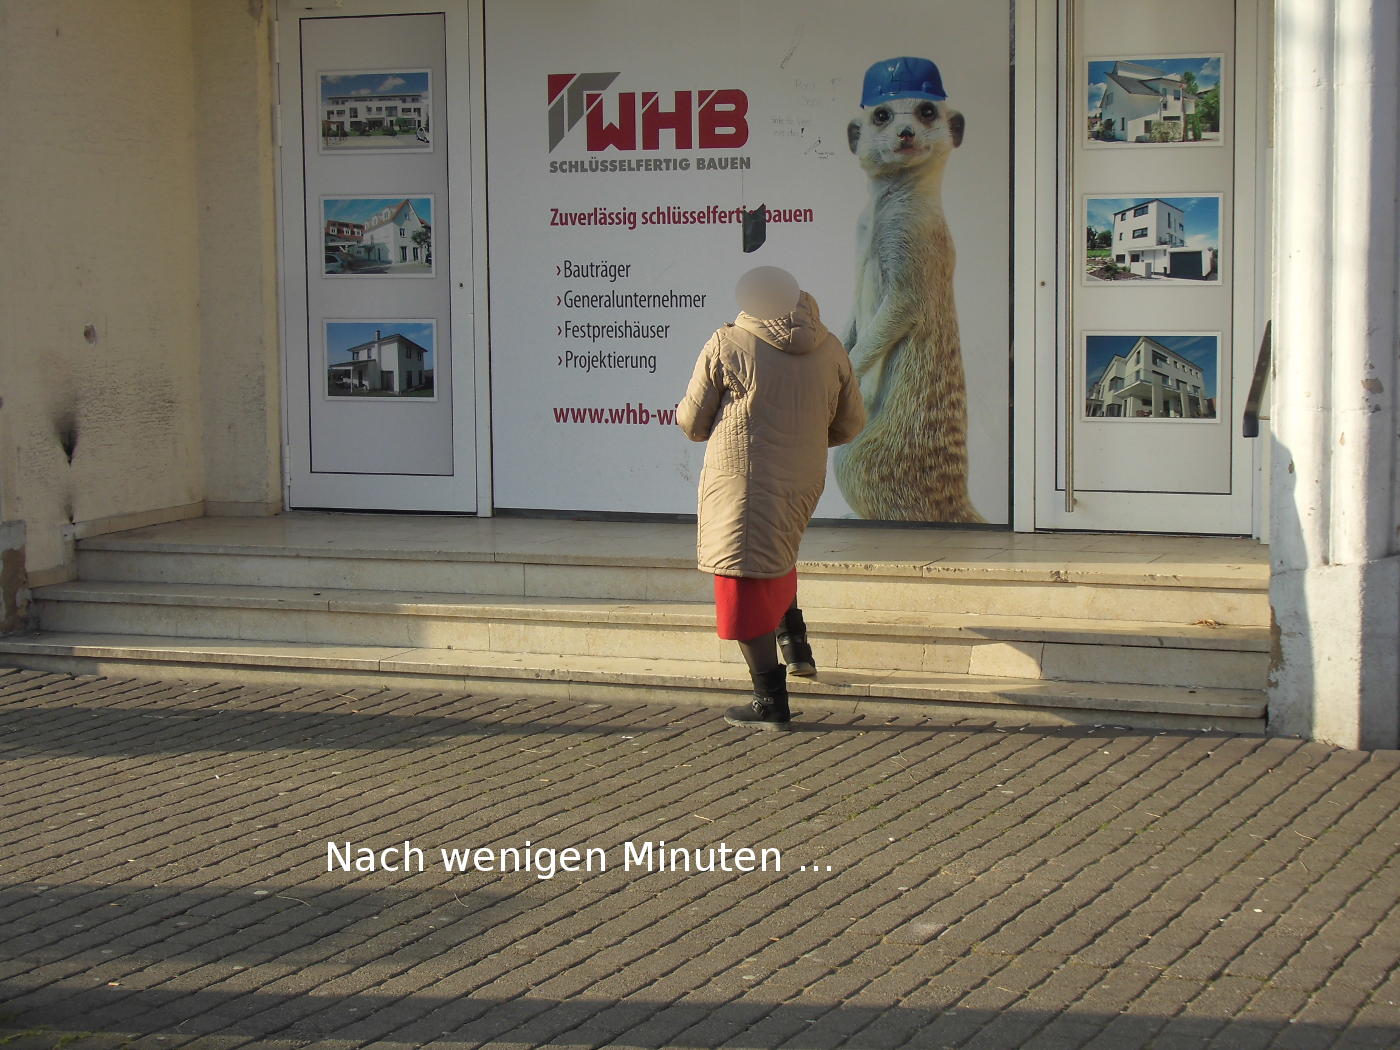 Watchtower advertising in Wiesloch and Heidelberg